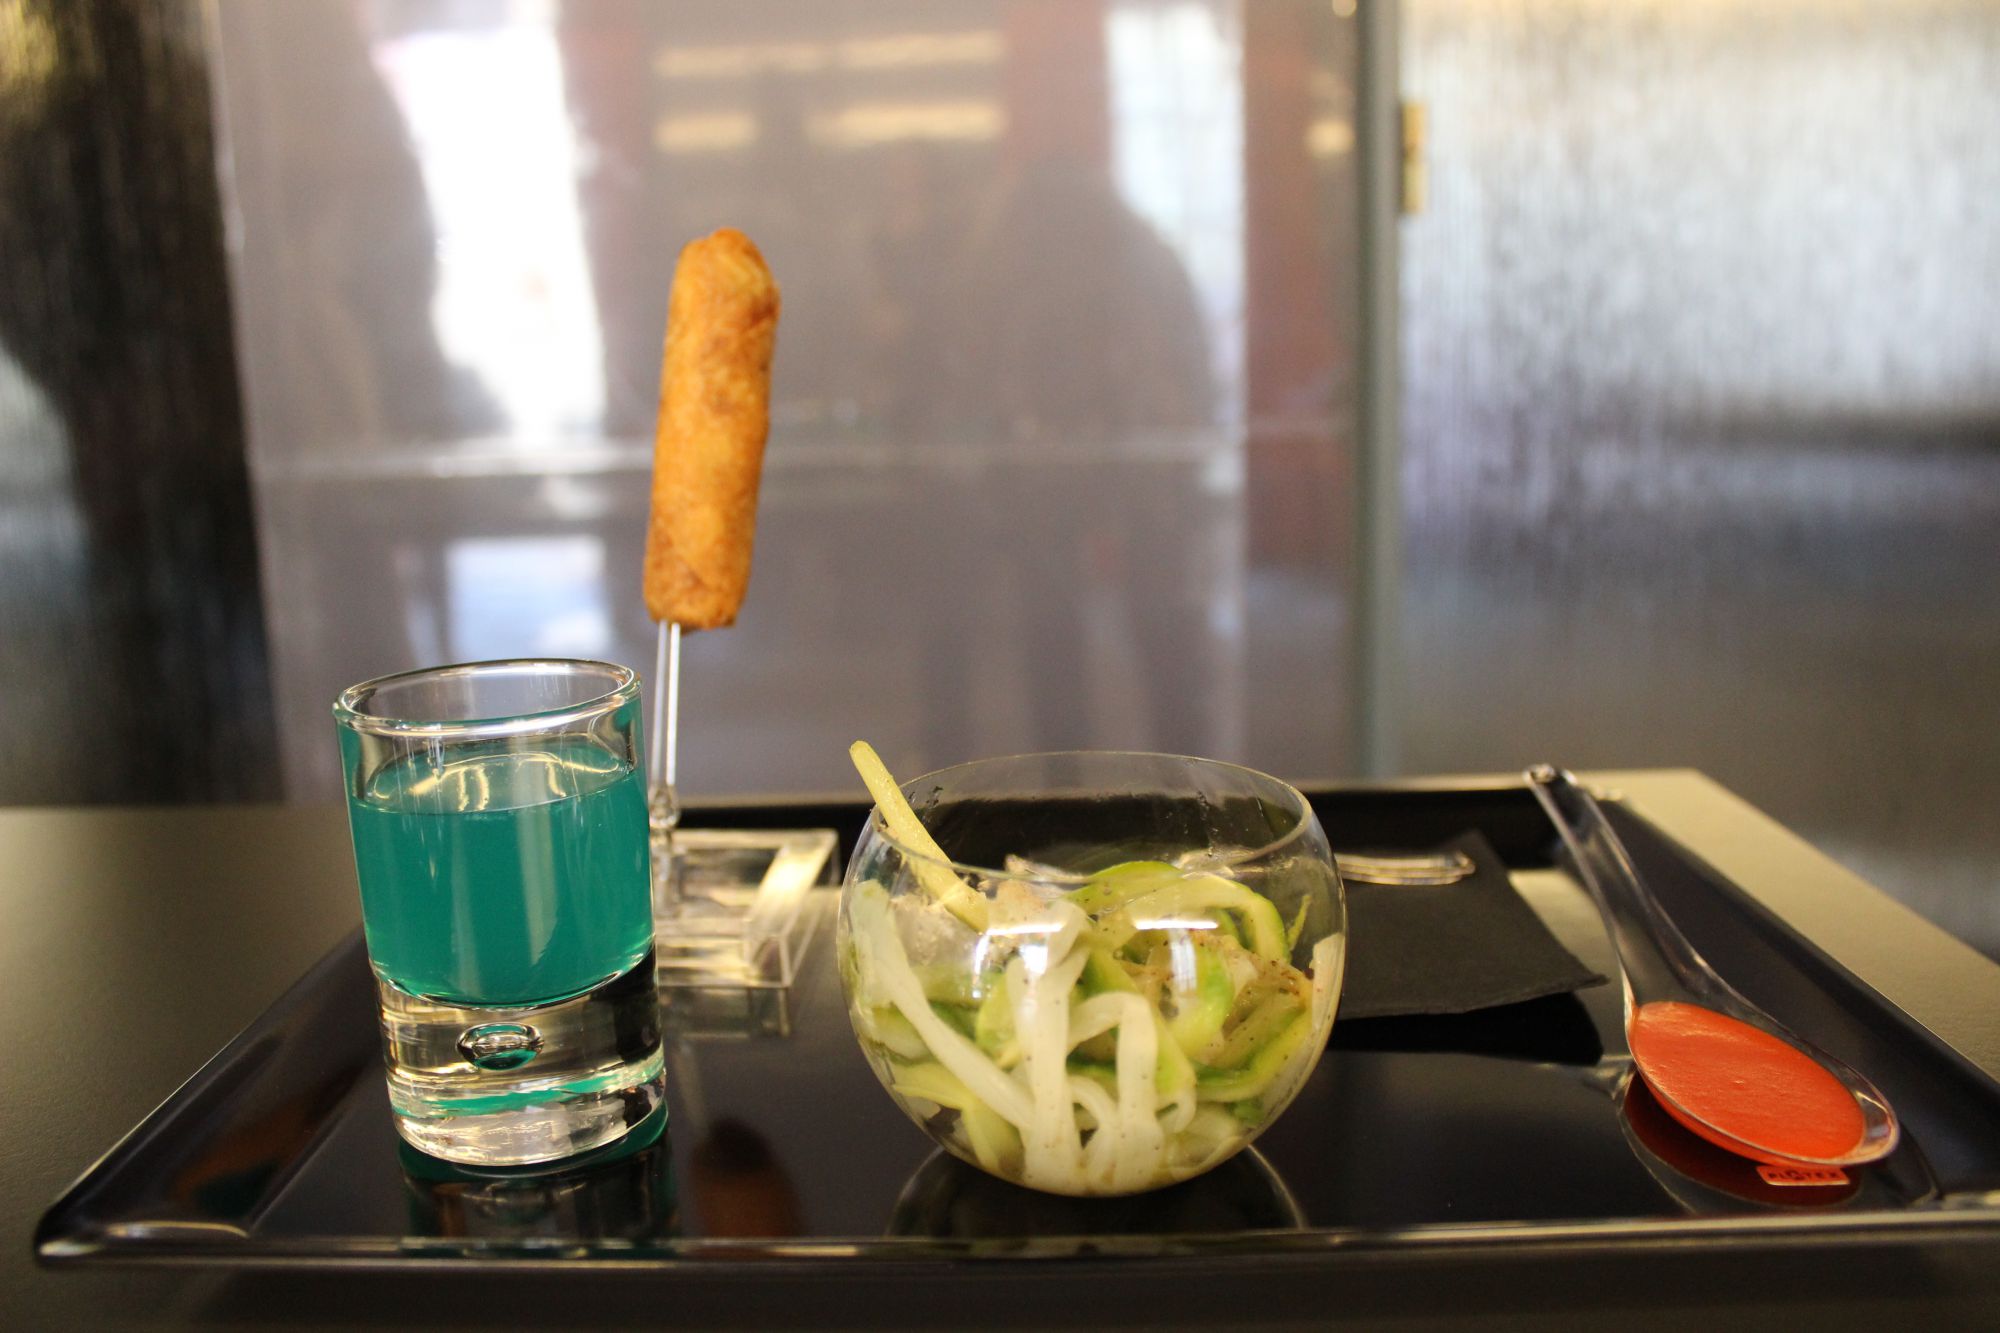 Le cocktail "Le Kube", sa salade d'asperges, sa pastilla de poulet et son velouté au poivron